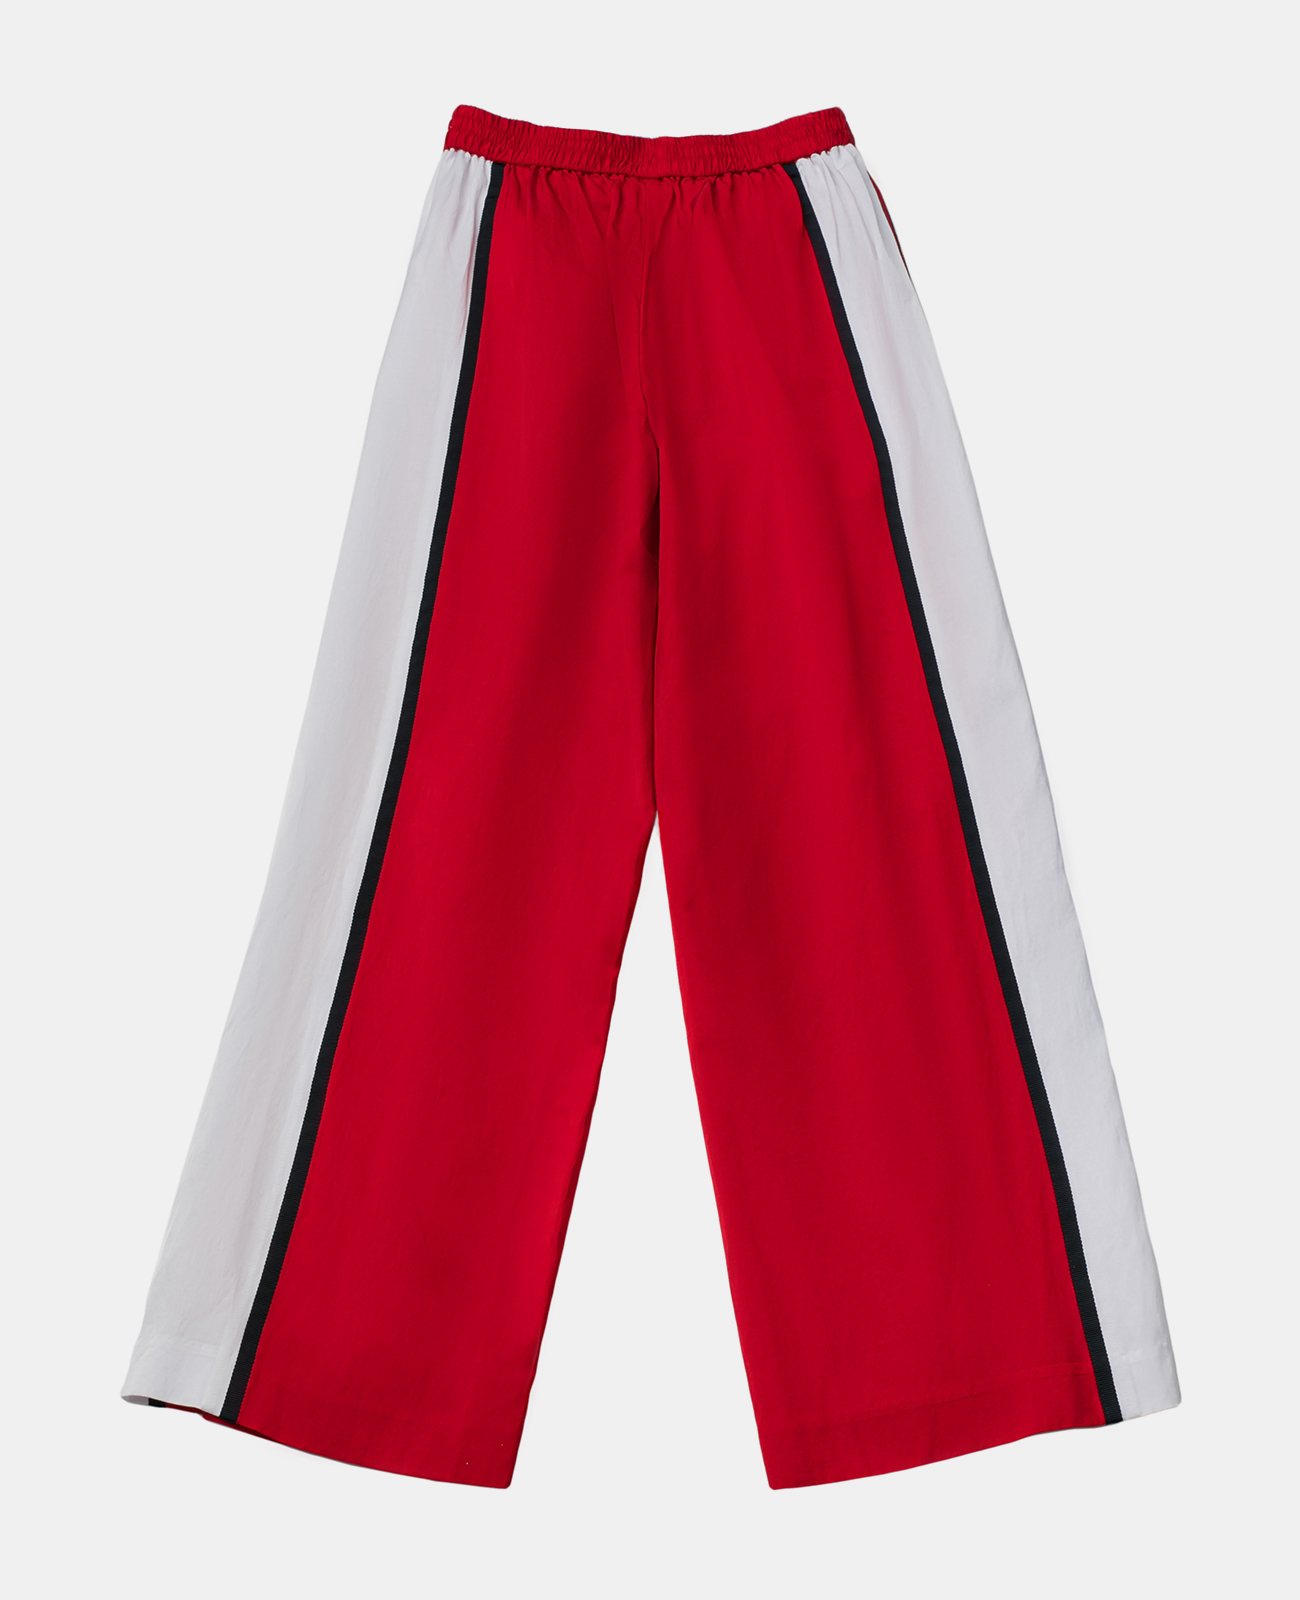 Красные брюки с лампасами Gulliver 12008GJC6306, размер 146, цвет красный - фото 1